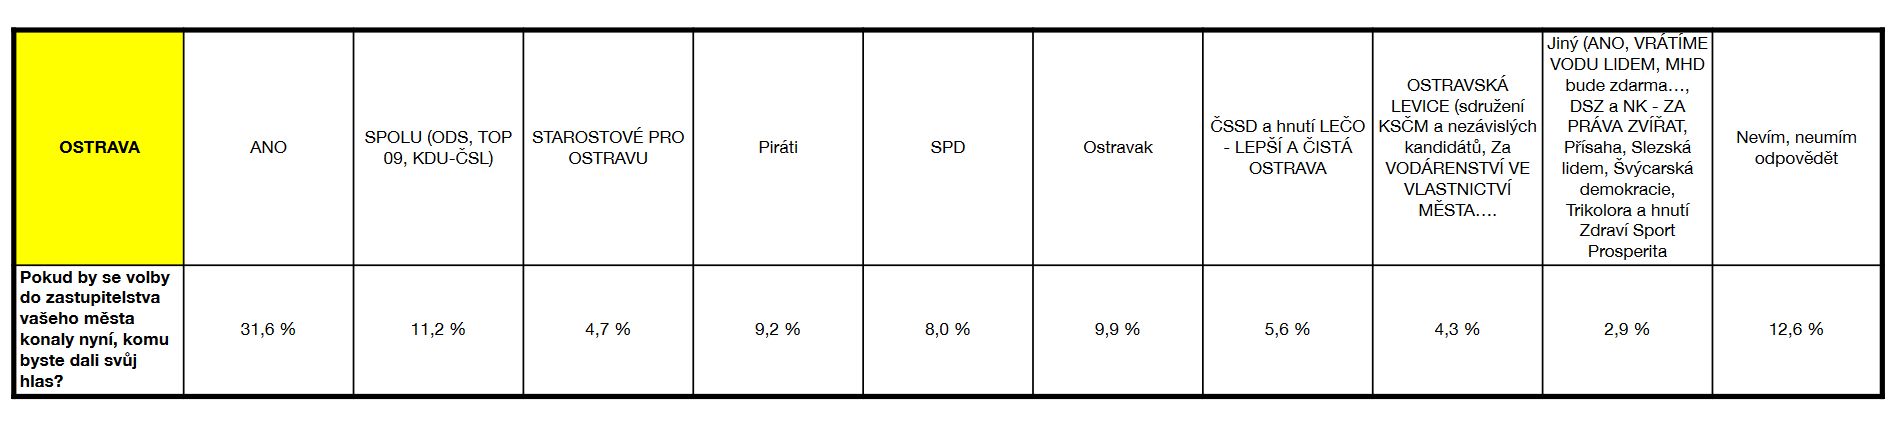 Průzkum: Komunální volby vb Ostravě